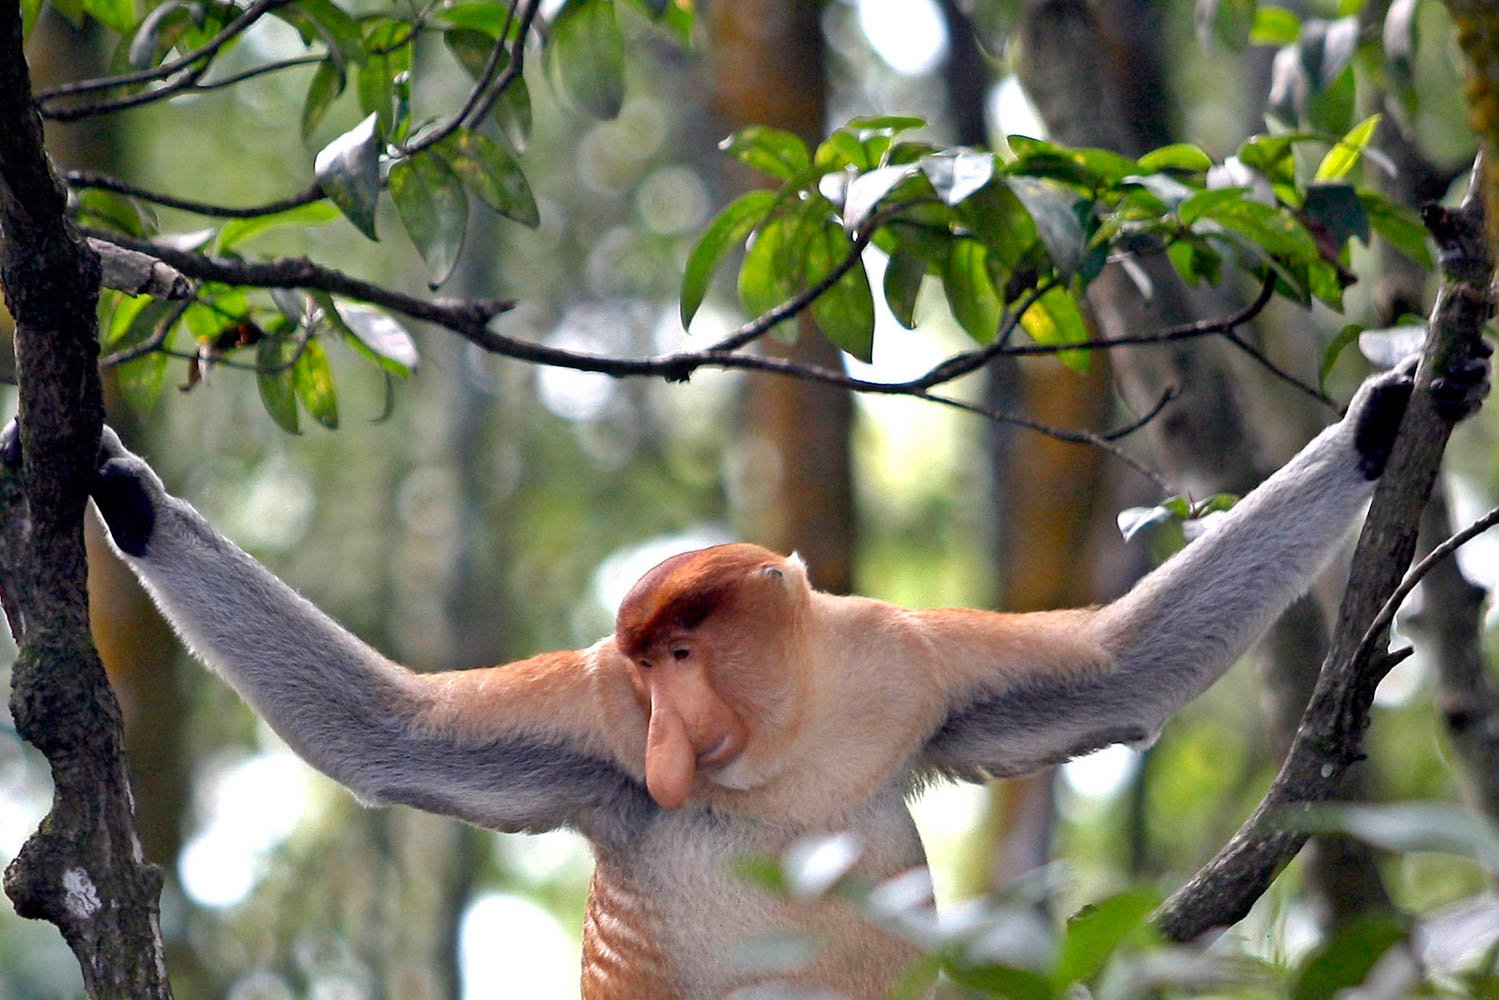 Seekor bekantan (Nasalis larvatus) terlihat di Kawasan Konservasi Mangrove dan Bekantan, Tarakan, Kalimantan Utara. Di KKMB, bekantan hidup secara berkelompok dengan jumlah populasi sekitar 45 ekor. Primata tersebut juga memliki sifat yang berbeda dengan jenis primata lainnya. Bekantan bukan termasuk monyet yang agresif sehingga membuat wisatawan yang berkunjung di kawasan itu merasa nyaman untuk melihatnya langsung di habitatnya.